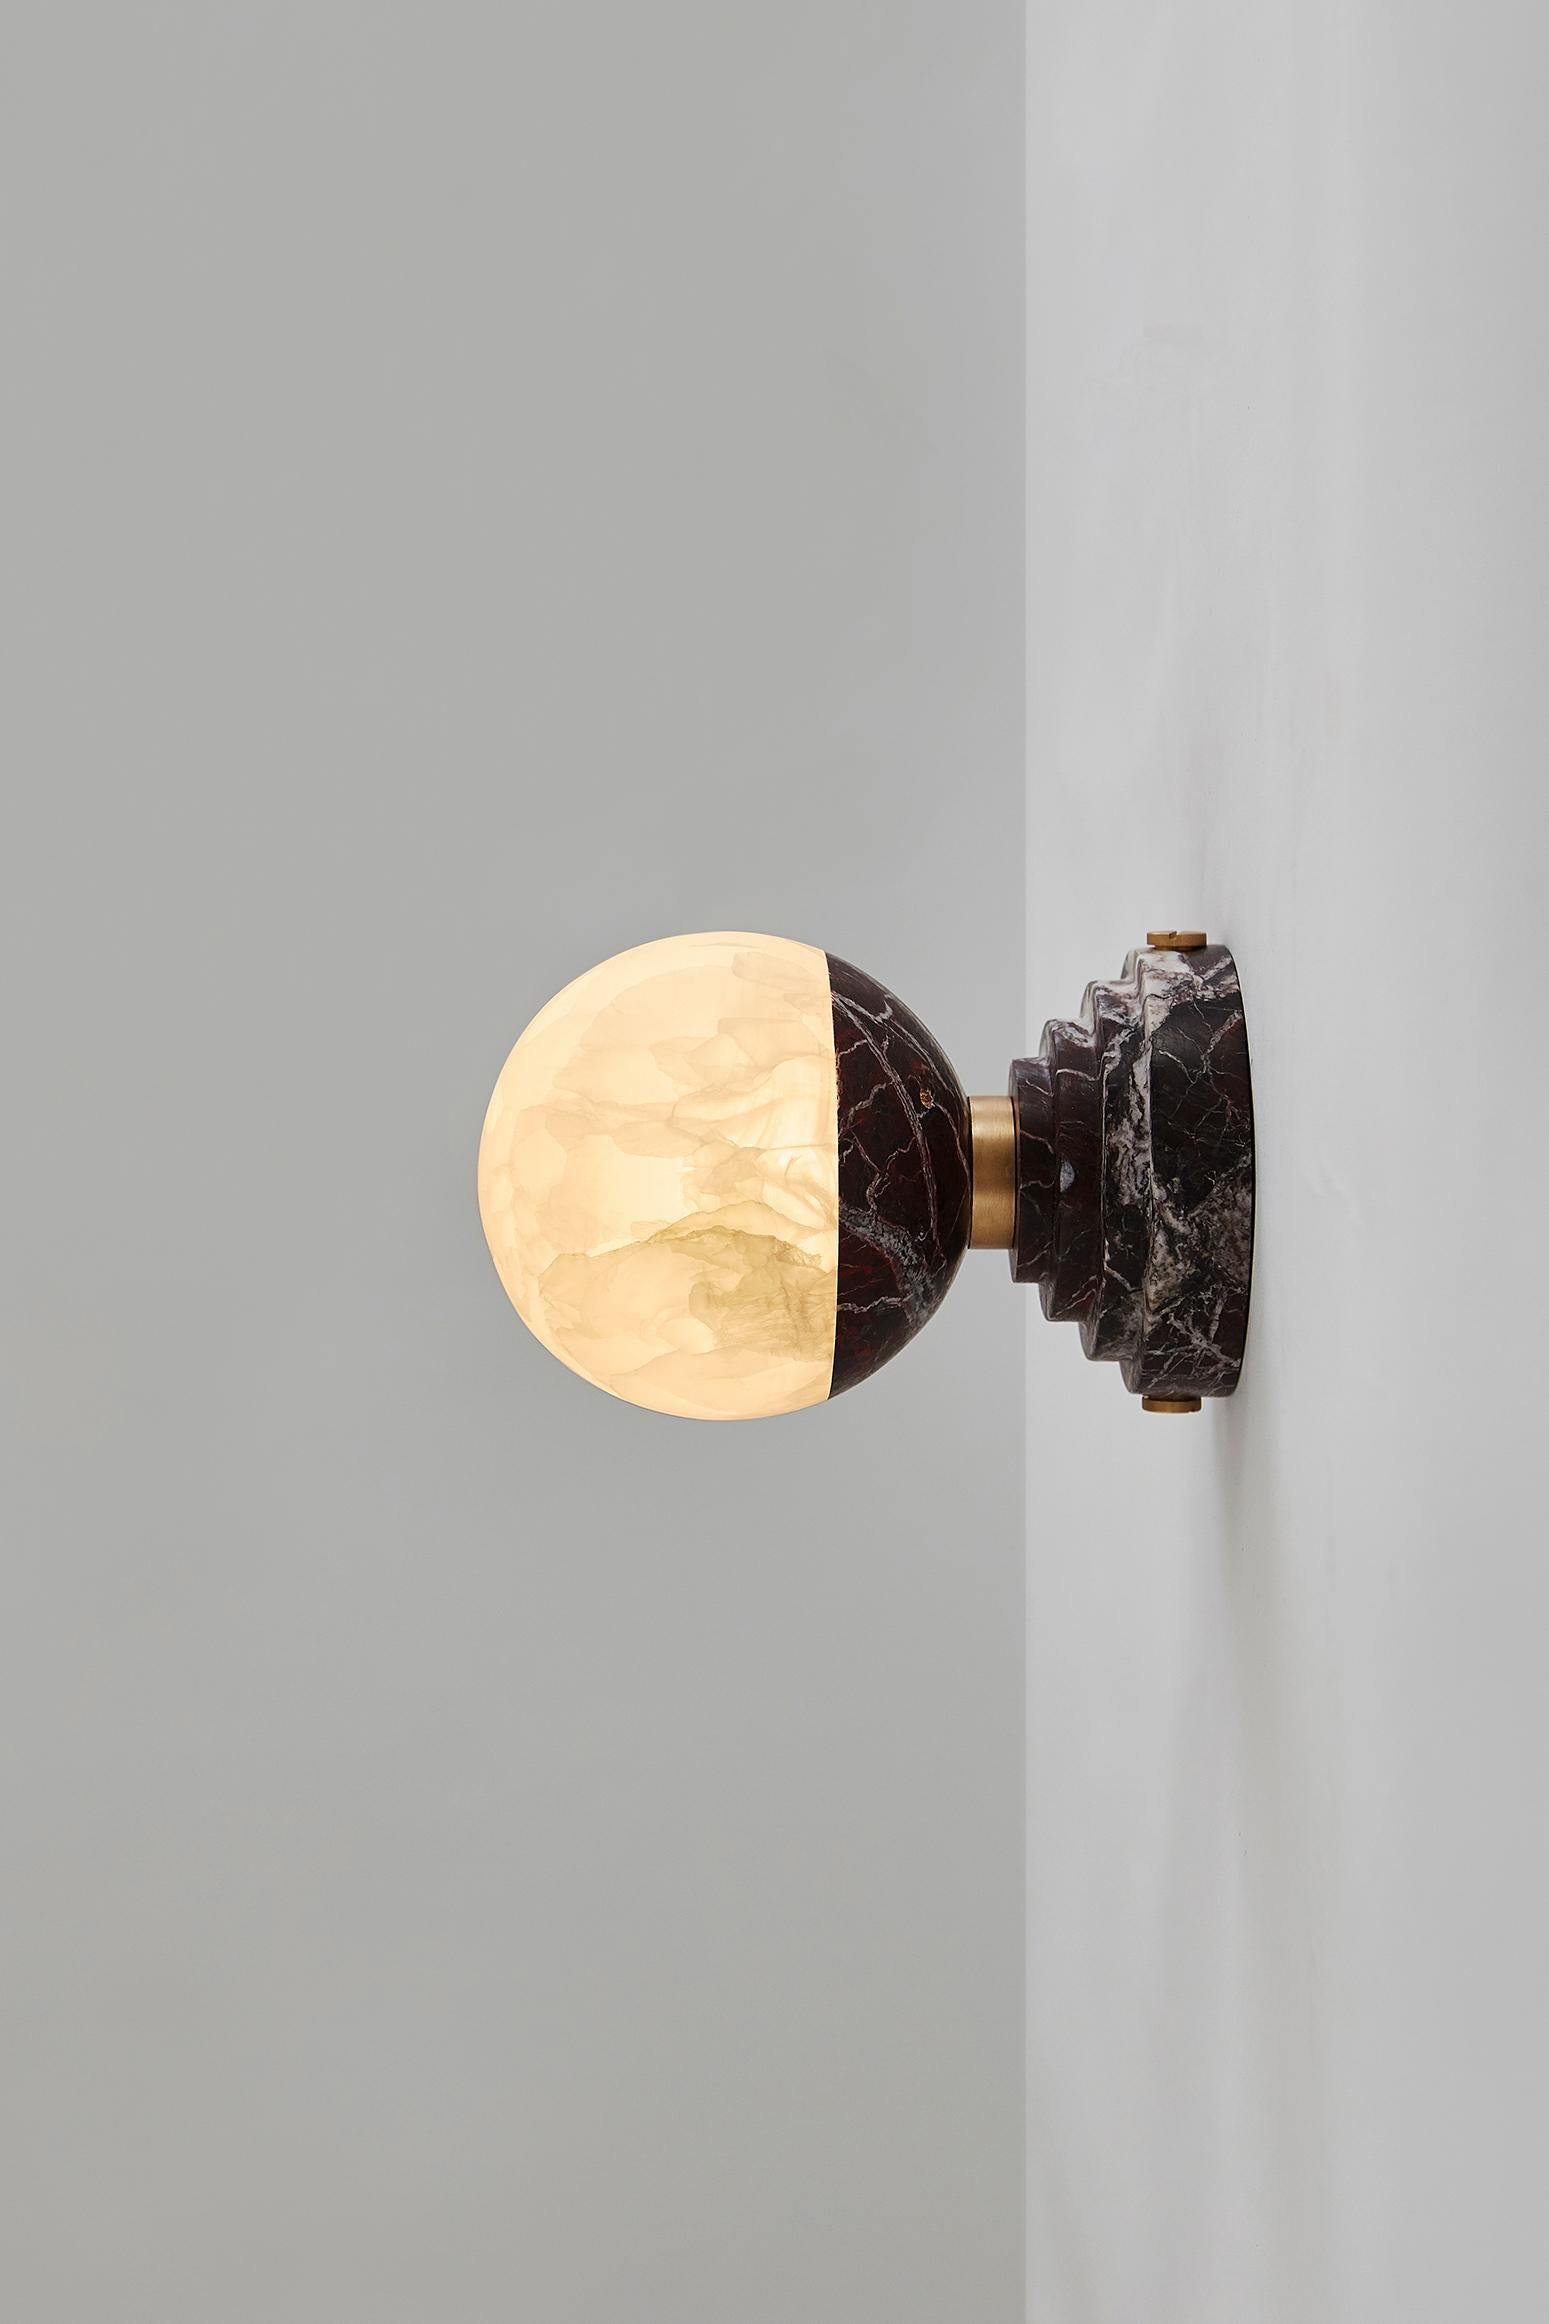 Cette ampoule lumineuse en onyx, qui éclaire l'espace d'une lumière chaude et douillette, est une déclaration d'amour à la lune argentée qui a inspiré tant de poètes et d'artistes. Posé sur un socle en marbre (disponible en Grand Antique, Portoro et